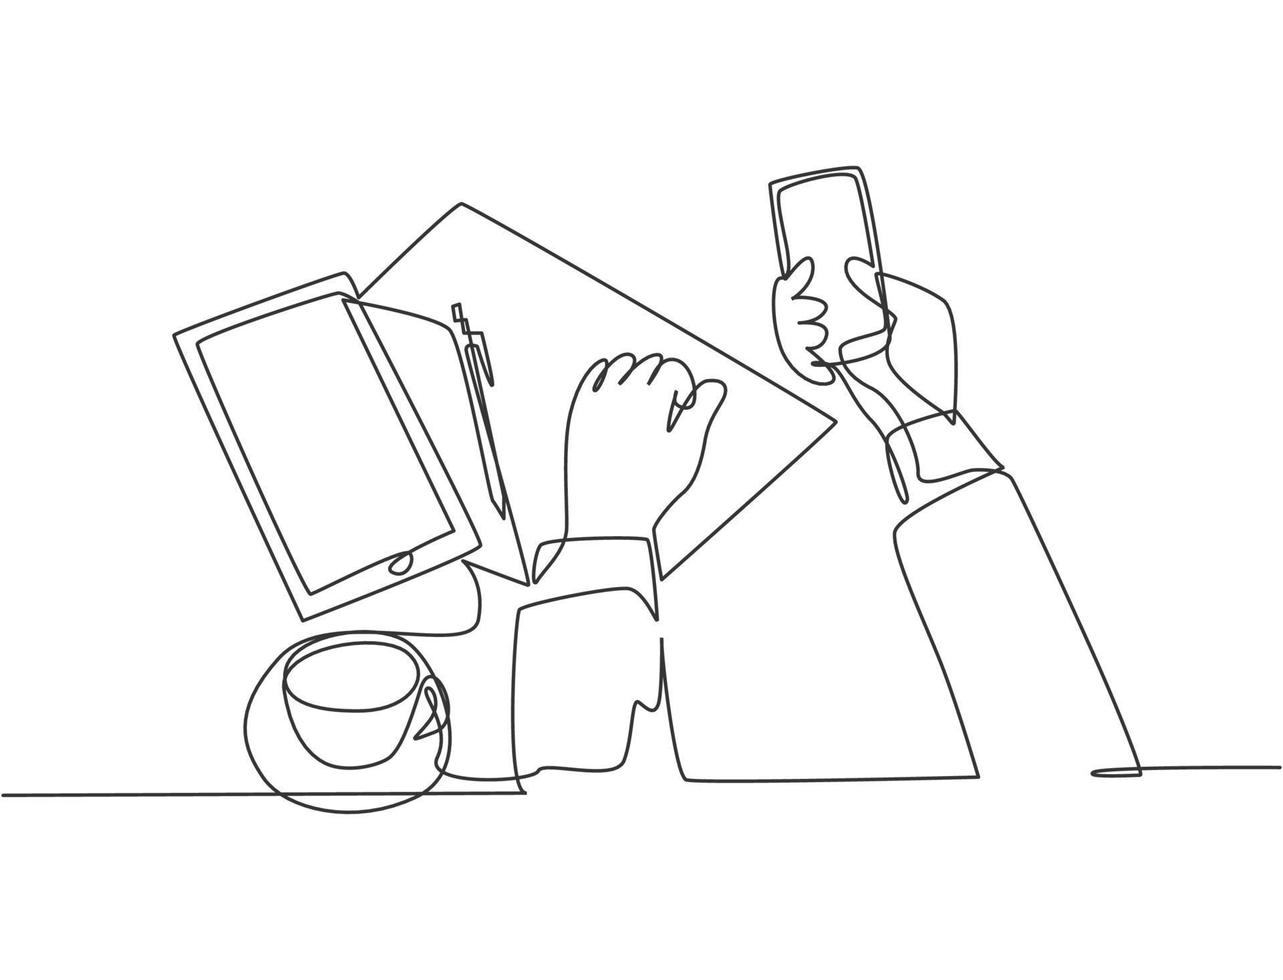 dibujo de una sola línea continua de gestos con las manos sosteniendo y tocando la pantalla del teléfono inteligente con una taza de té, una hoja de papel y una tableta en el escritorio. concepto de gadget una línea dibujar diseño ilustración vectorial vector